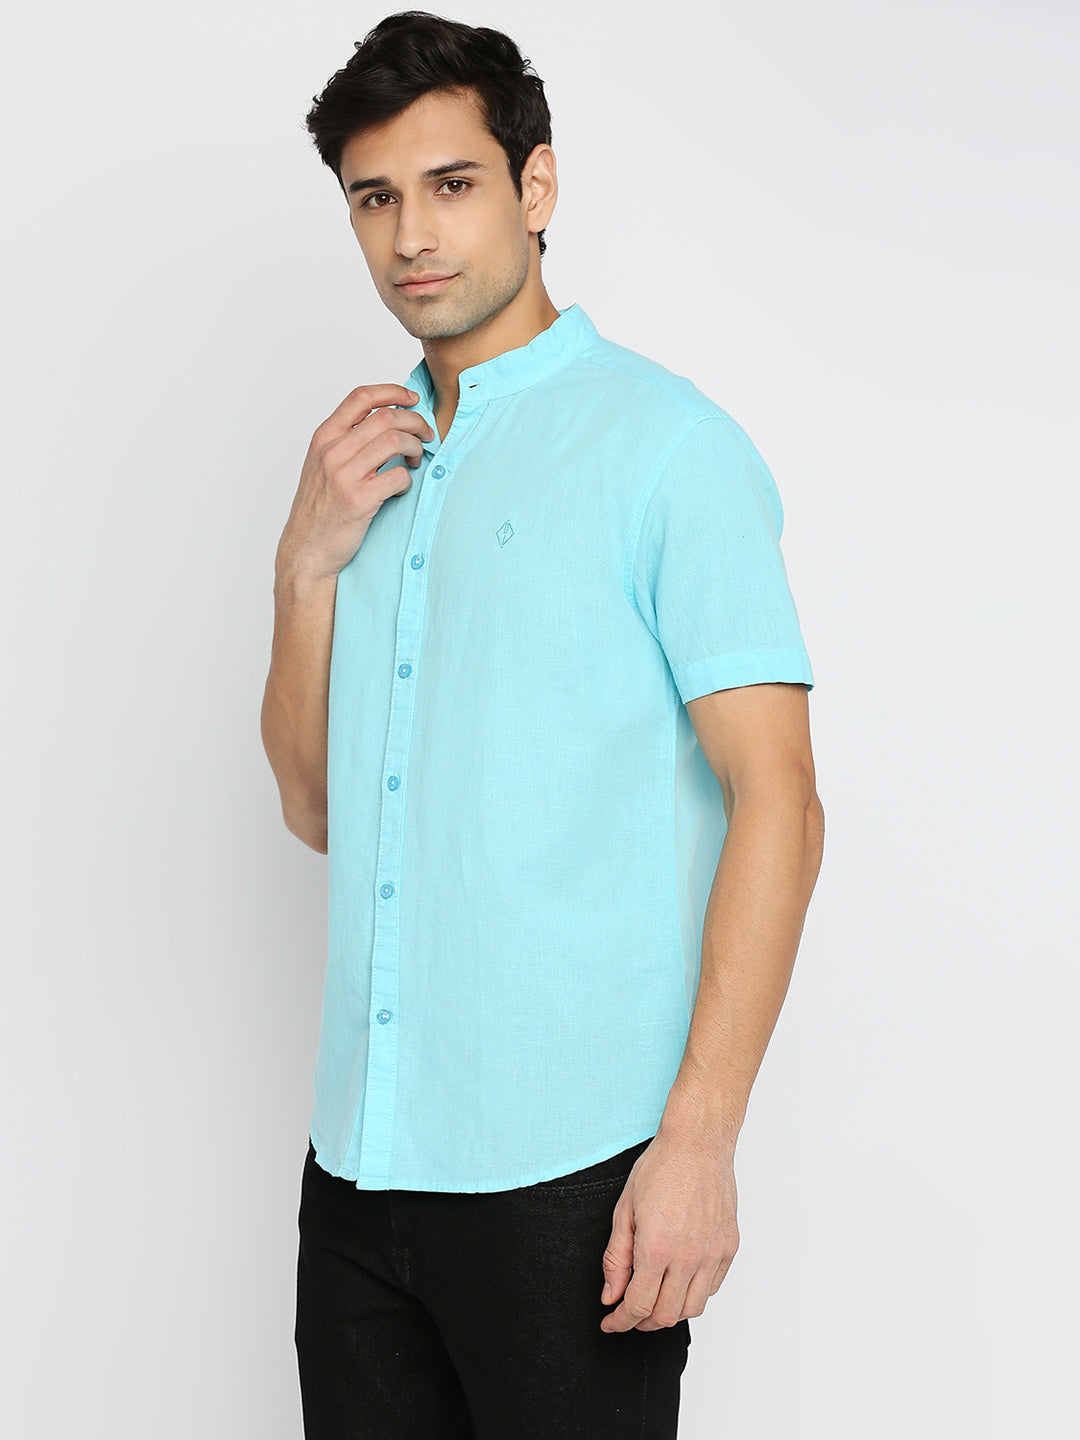 Mandarin Linen Cotton Light Blue Shirt